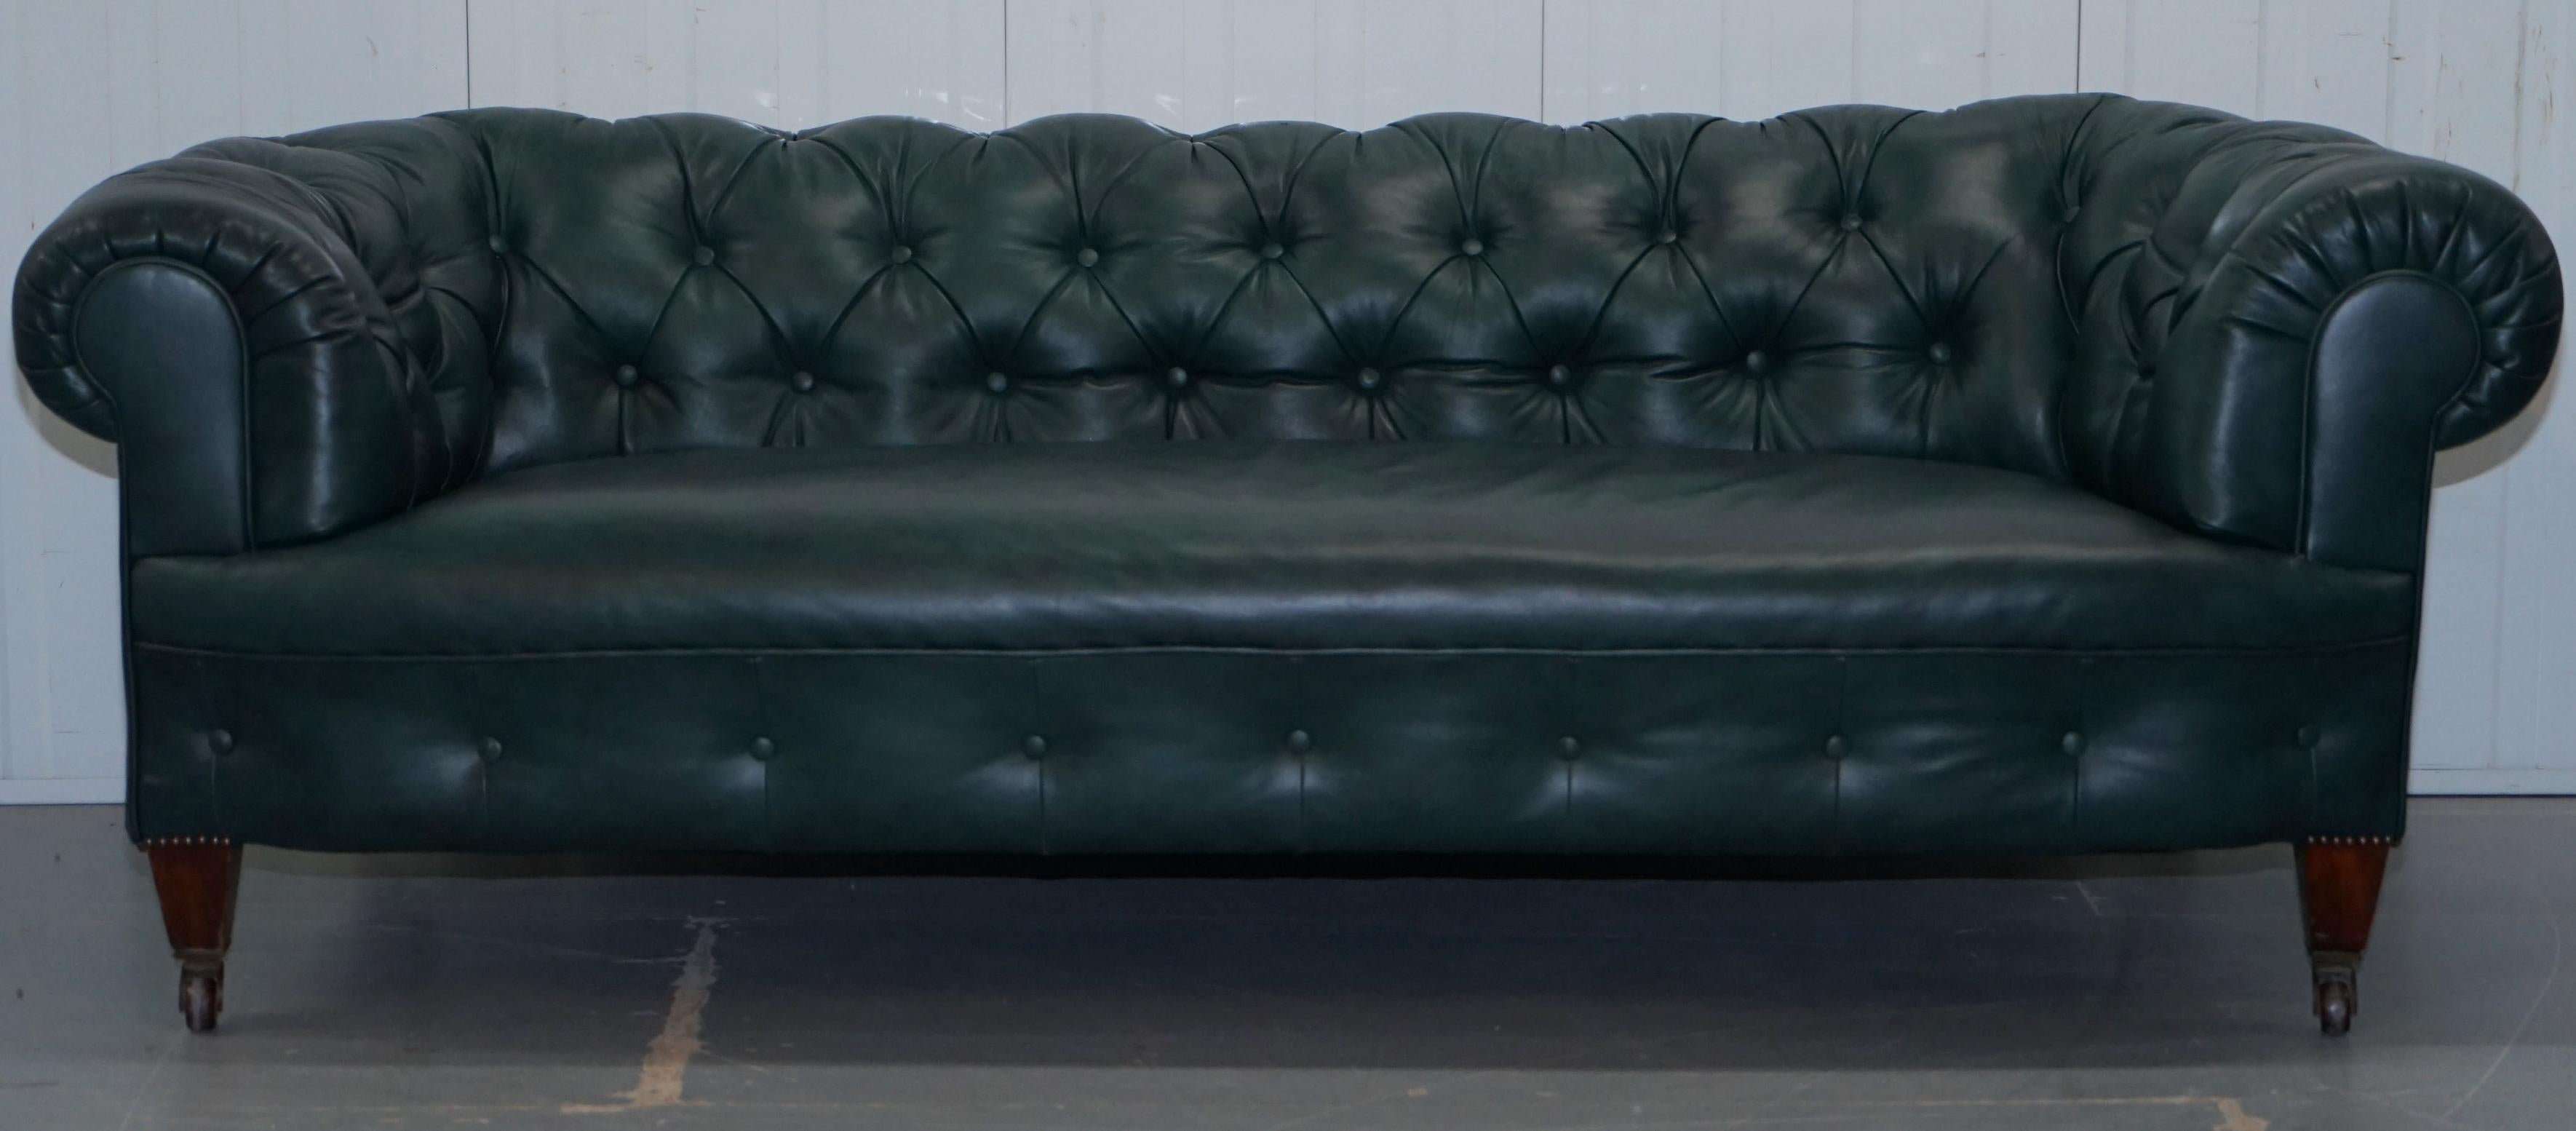 Wir freuen uns, dieses schöne, seltene, original restaurierte viktorianische 1890er Cornelius V Smith Chesterfield Sofa aus grünem Leder zum Verkauf anbieten zu können.

Was soll ich sagen, wenn Sie auf der Suche nach den besten viktorianischen